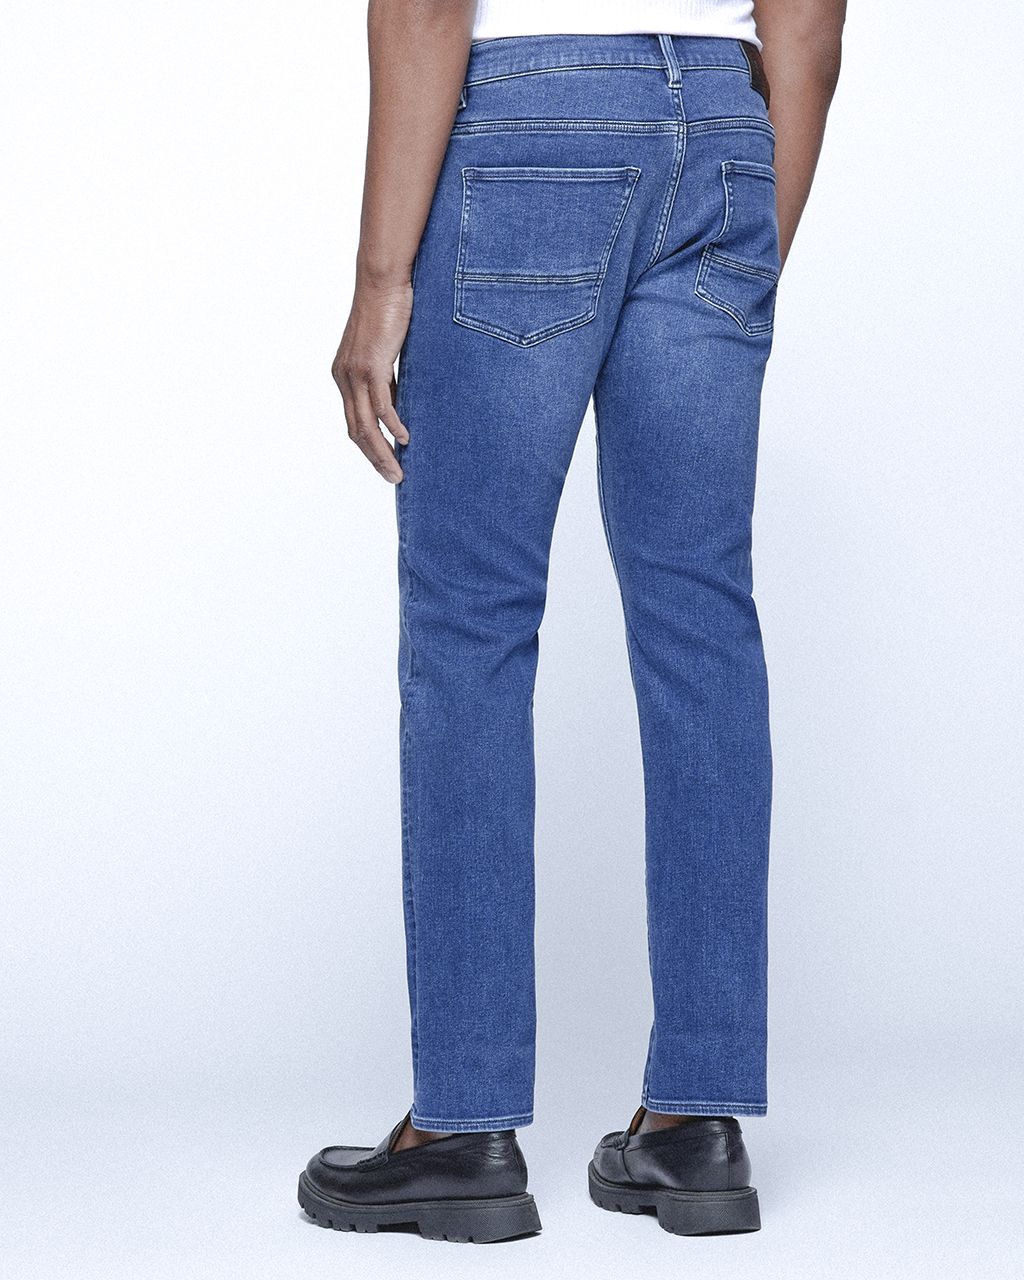 Hugo Boss Menswear Delaware Jeans Blauw 076339-001-31/32